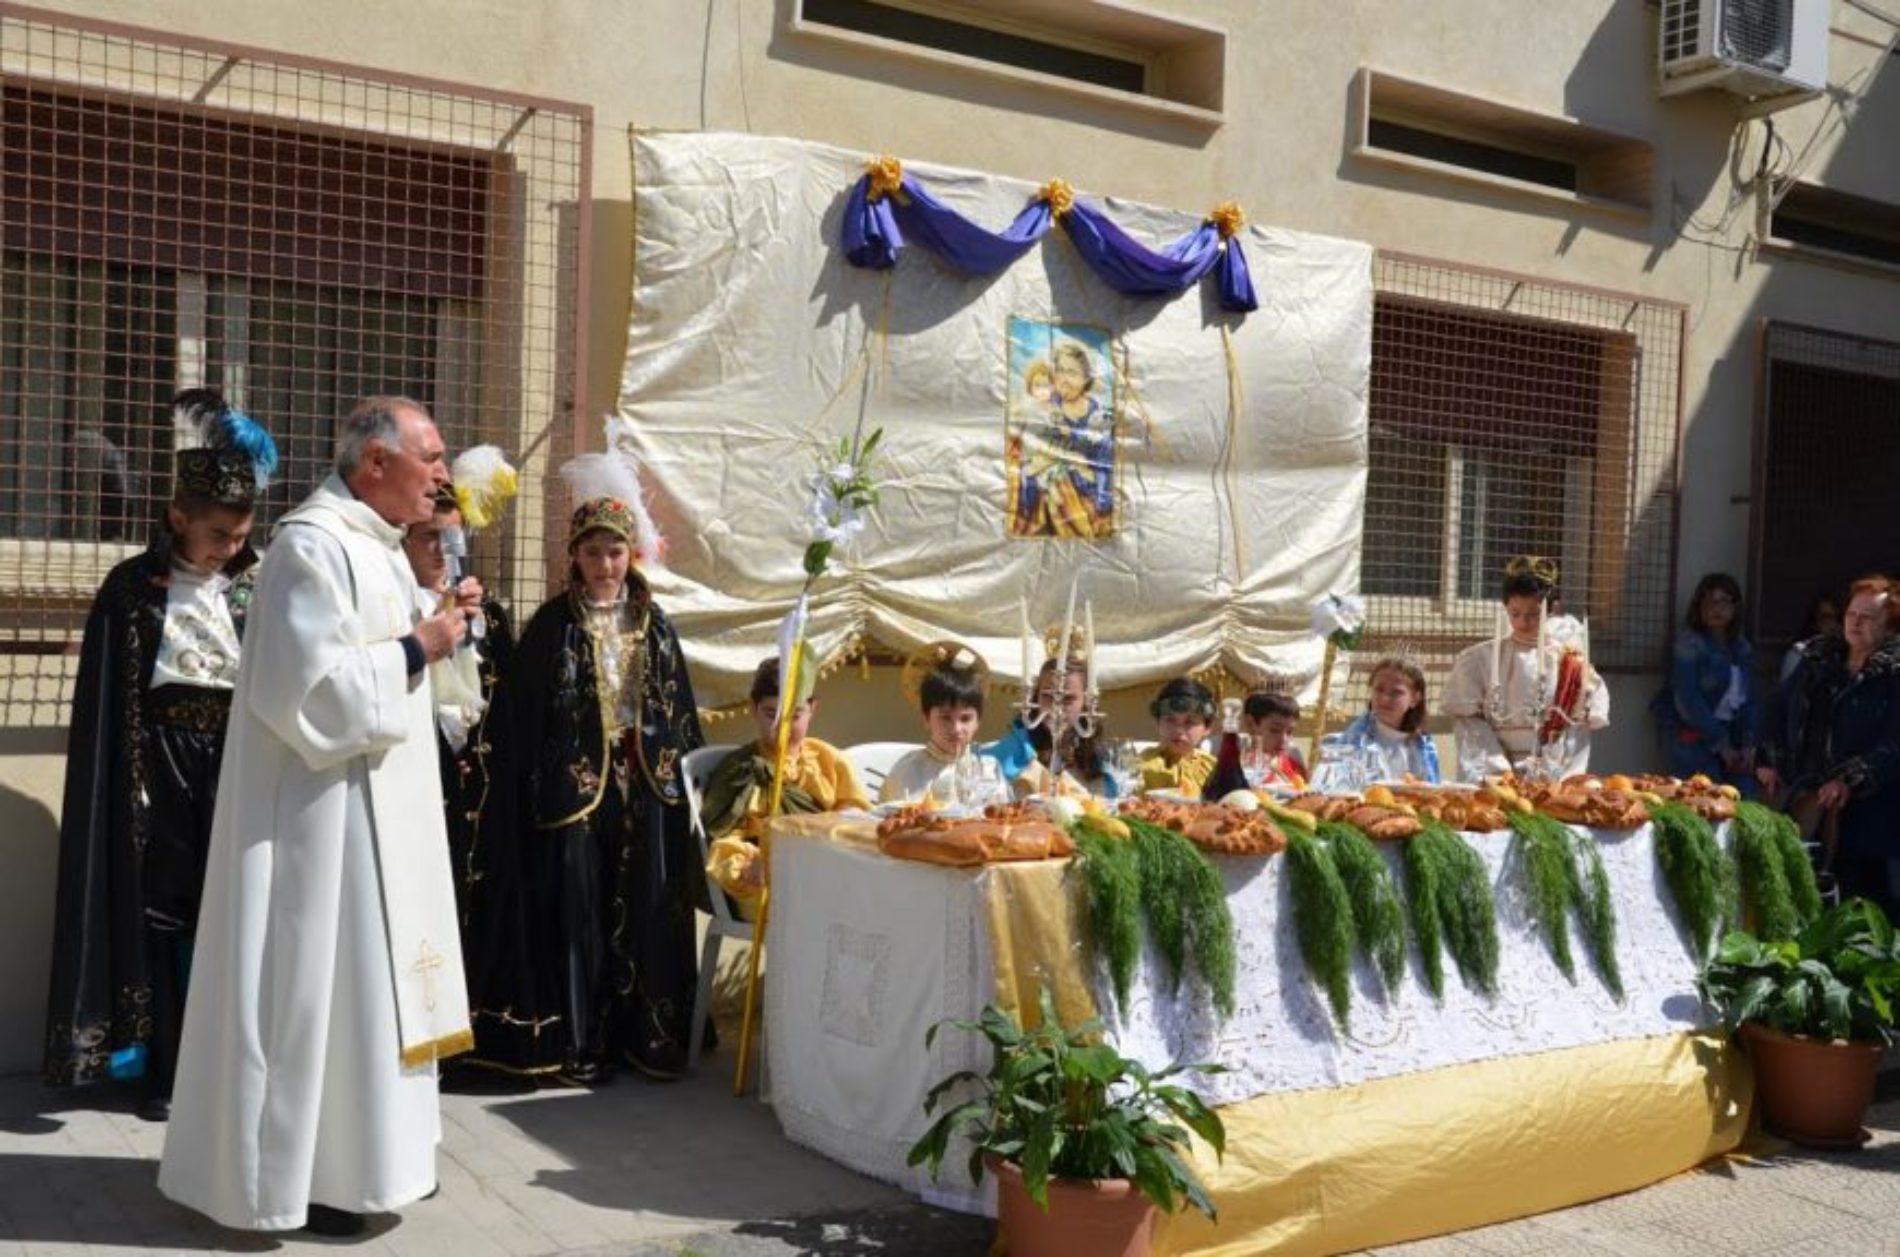 Il plesso “G. Verga” celebra la festa di san Giuseppe con la tradizionale “tavolata”